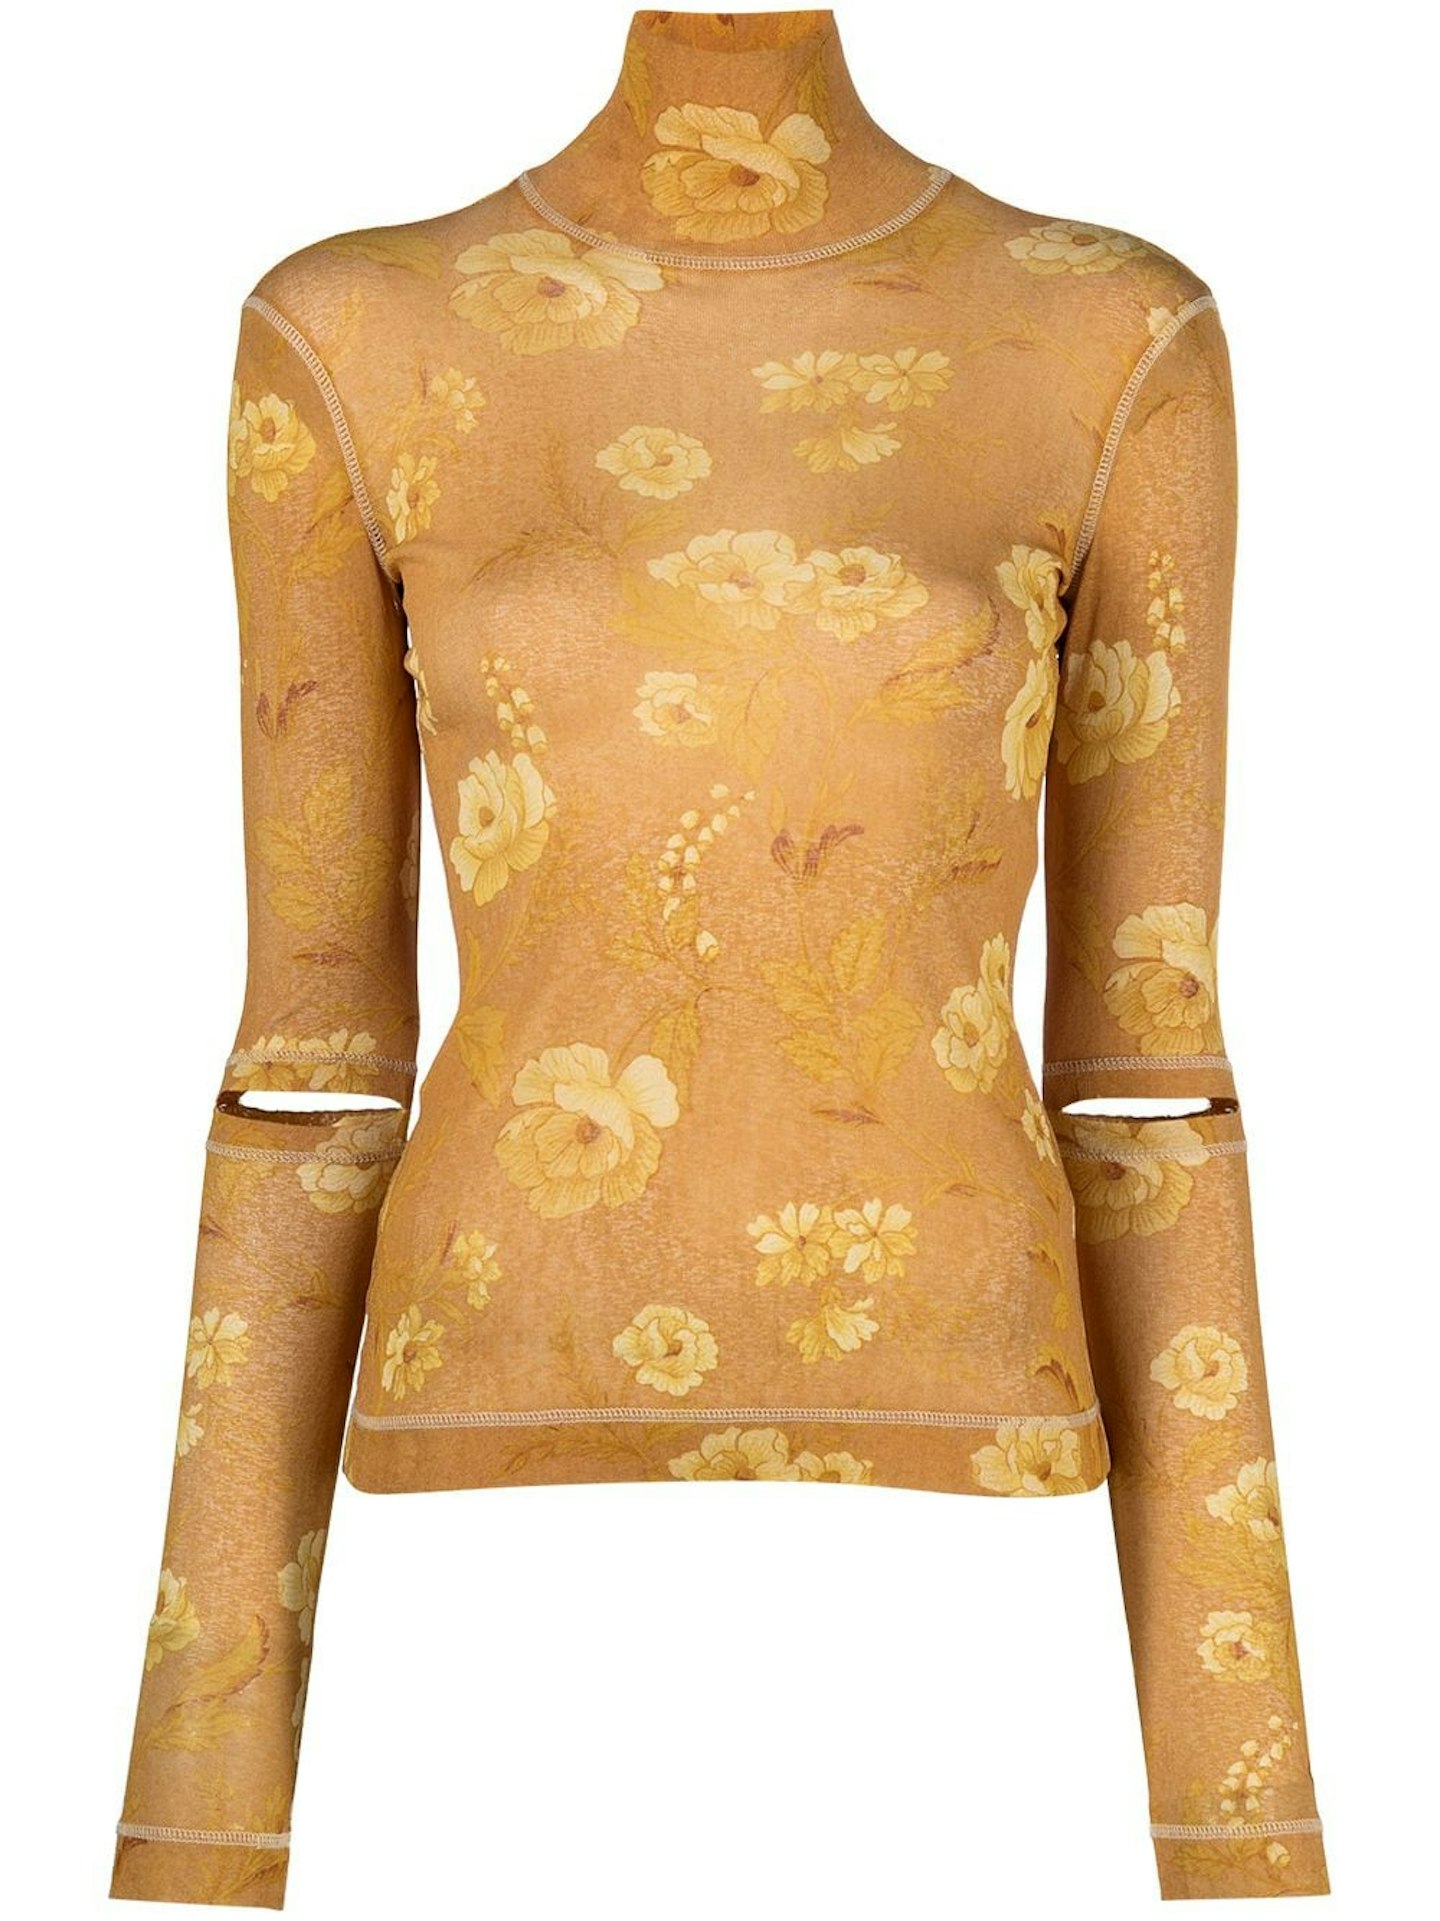 Nanushka, Larson blouse, £187